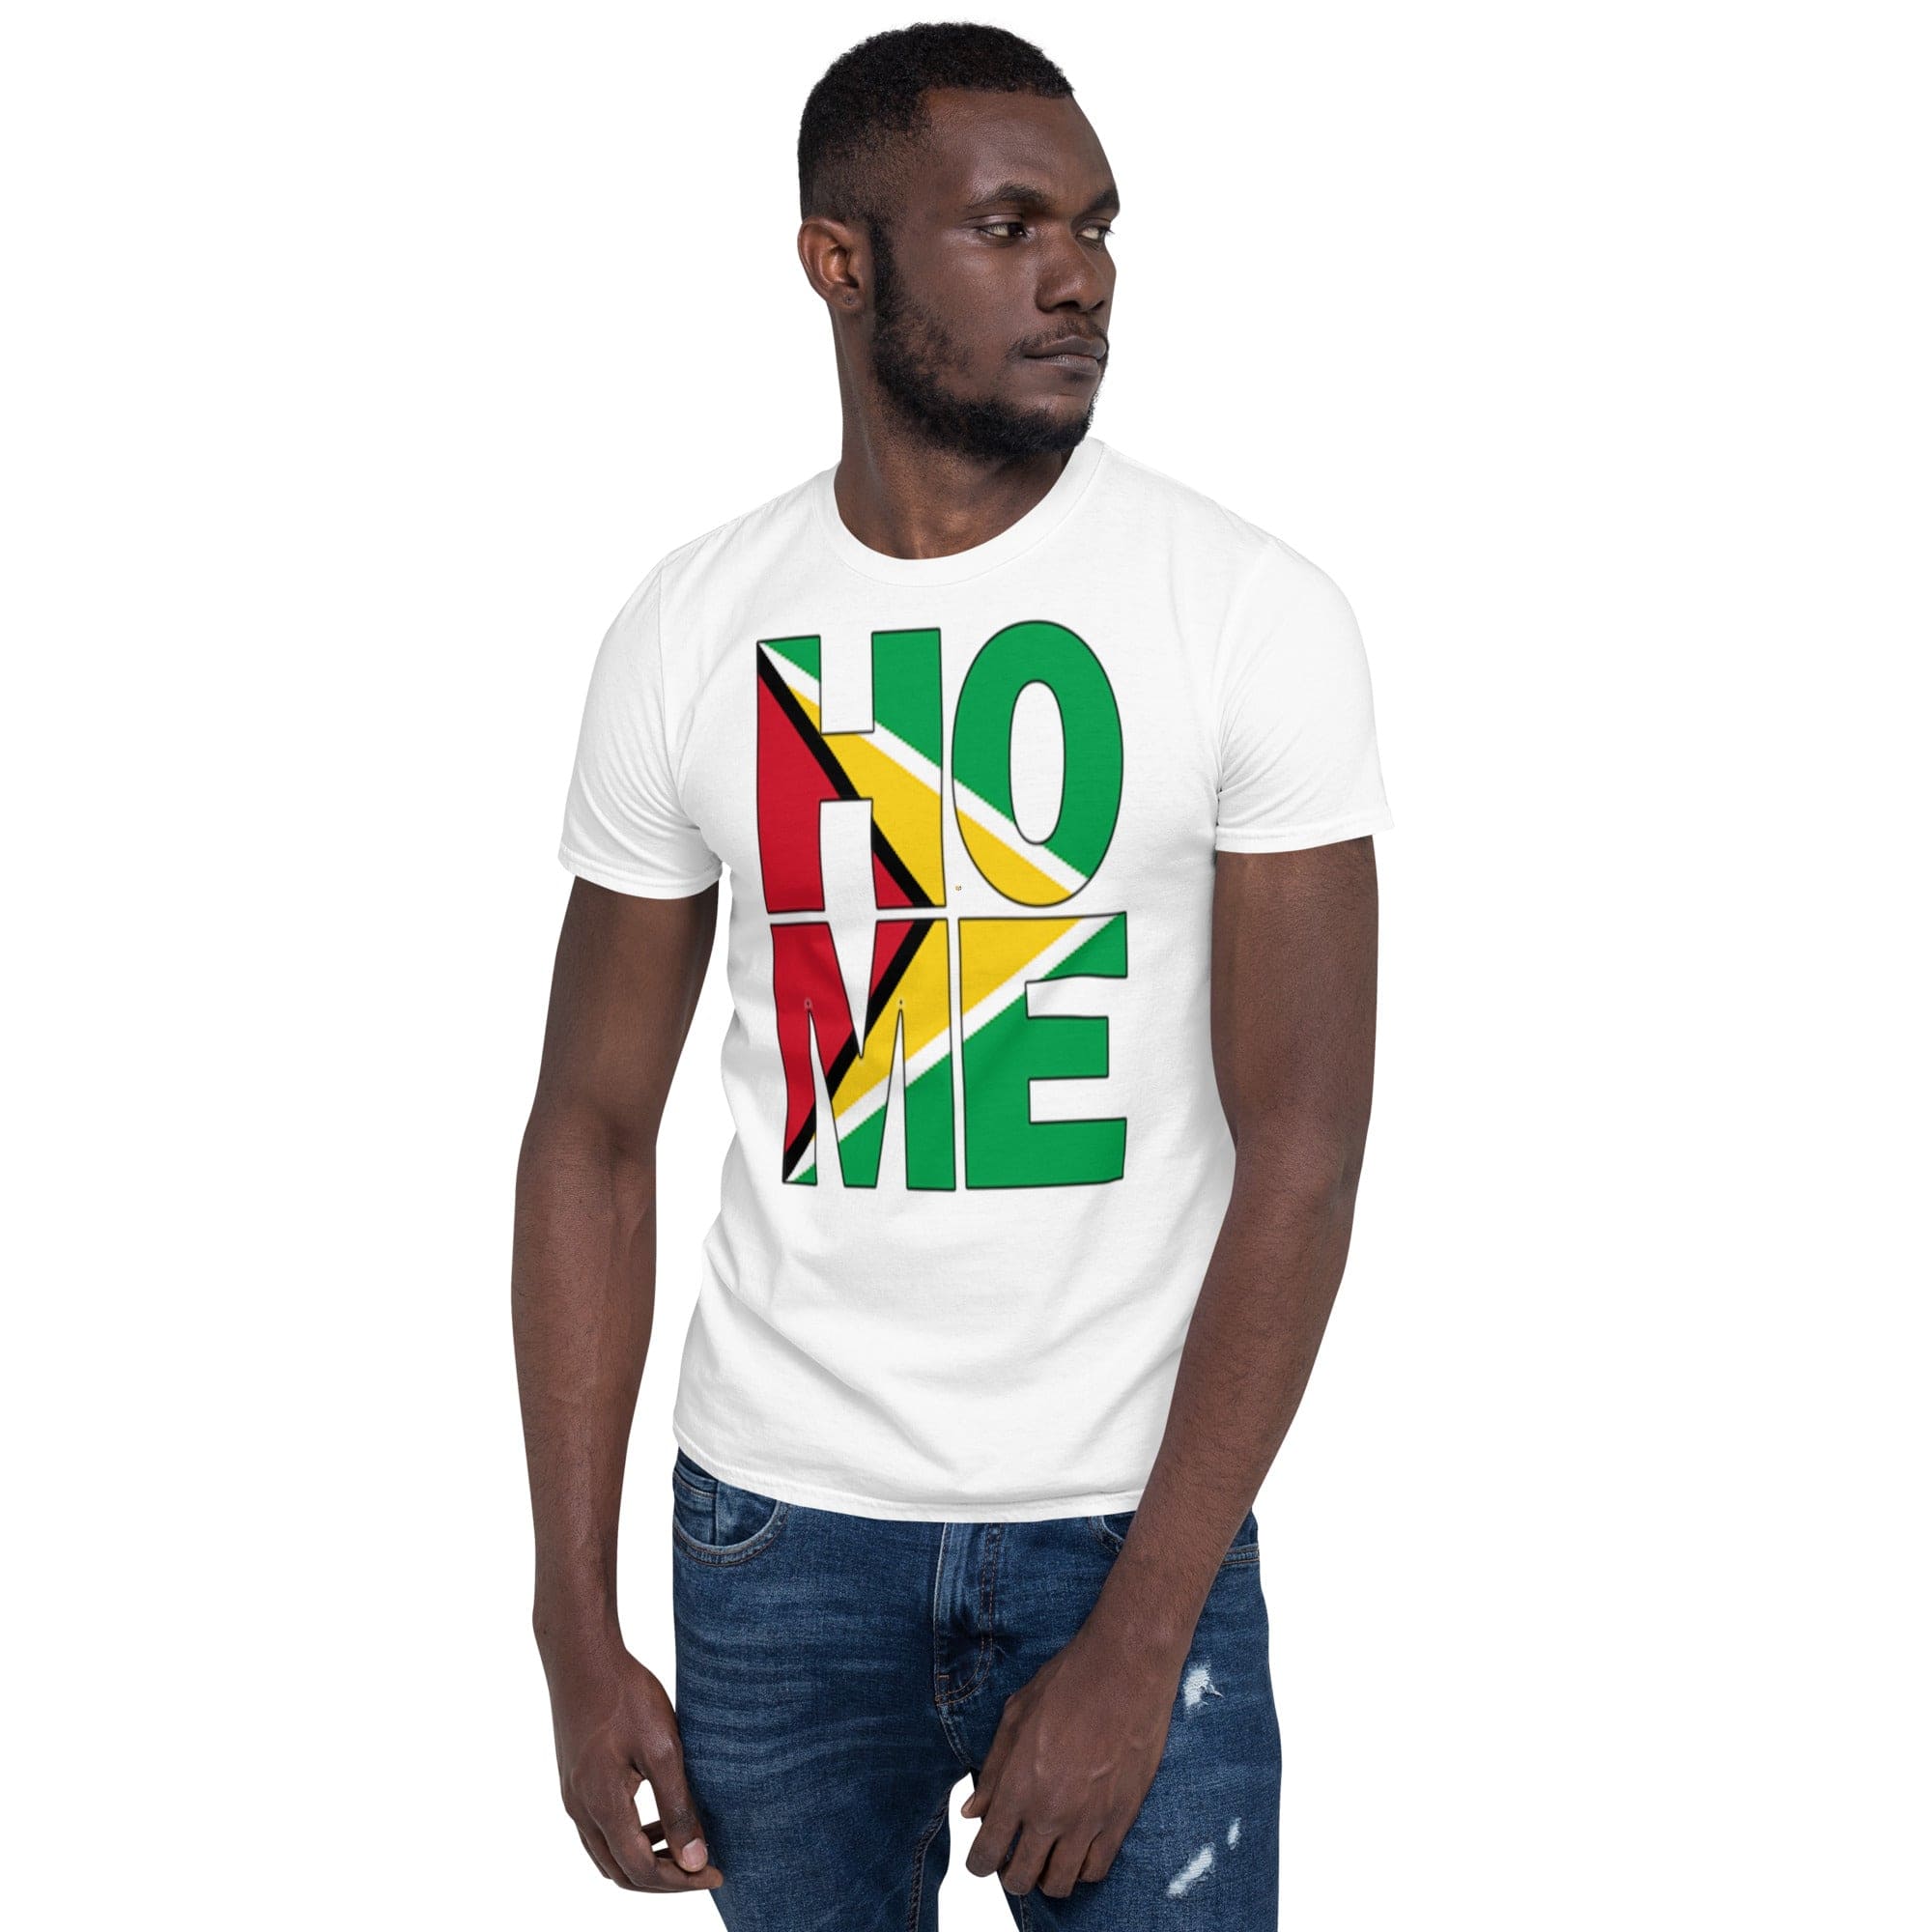 Guyana flag spelling HOME on black men wearing white color shirt